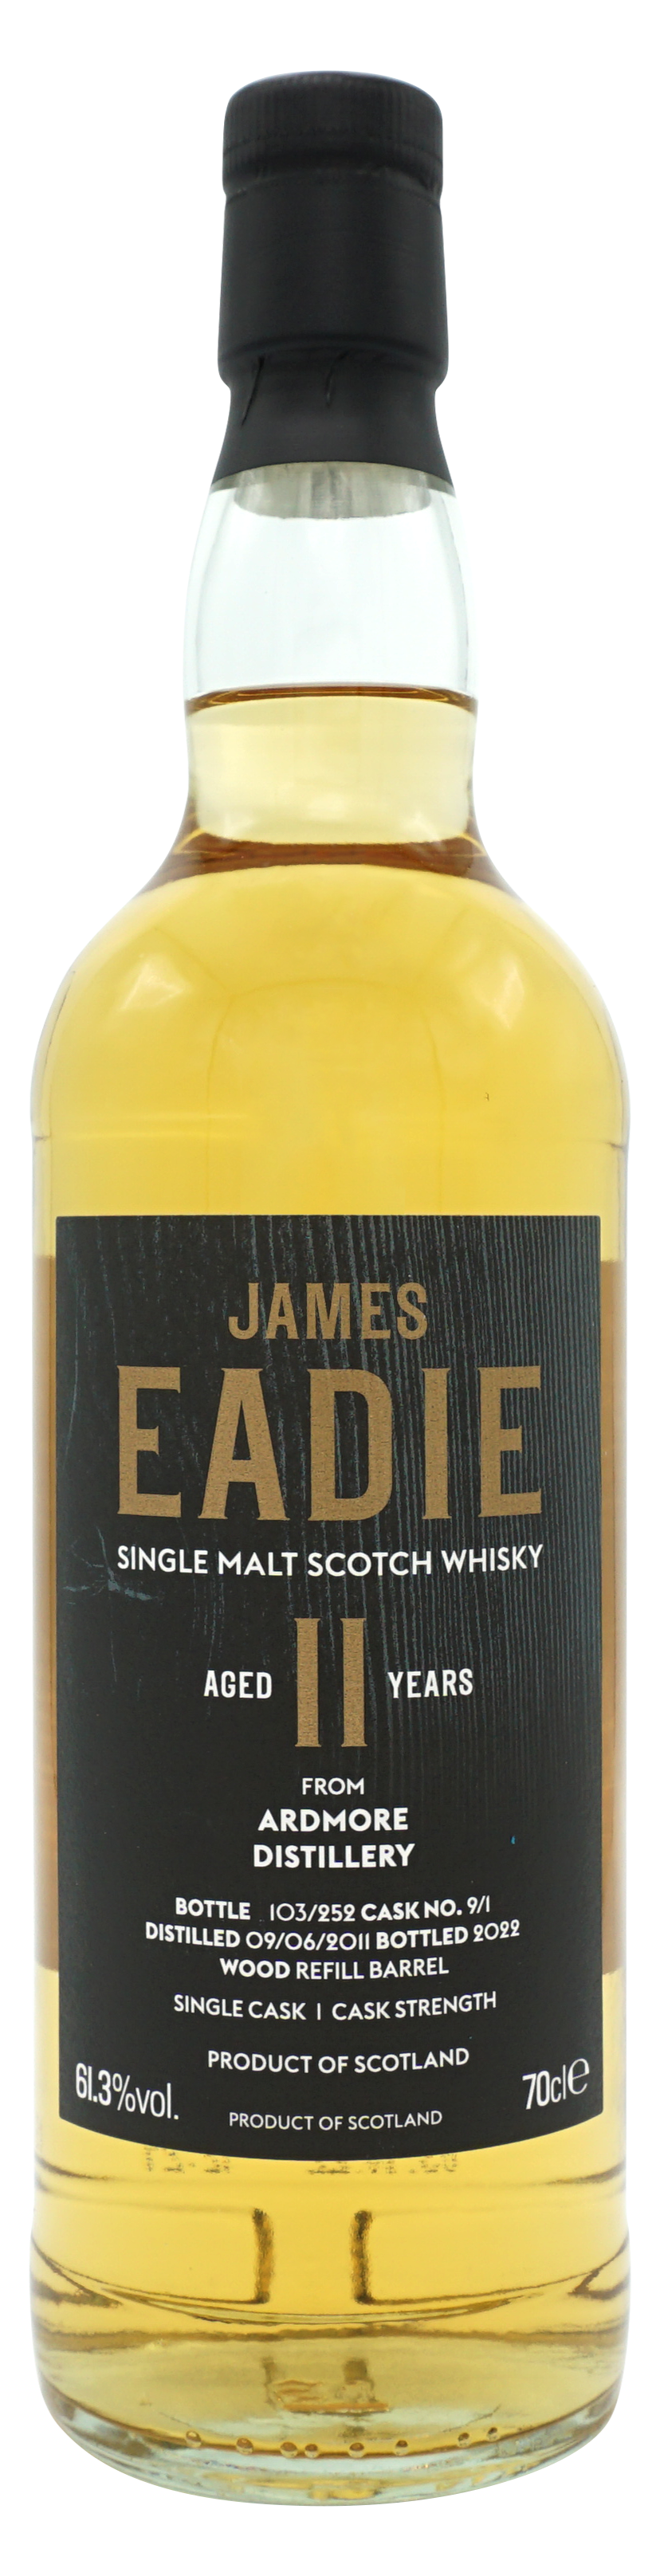 James Eadie Ardmore 10 Years 2010 Single Malt 70cl 613